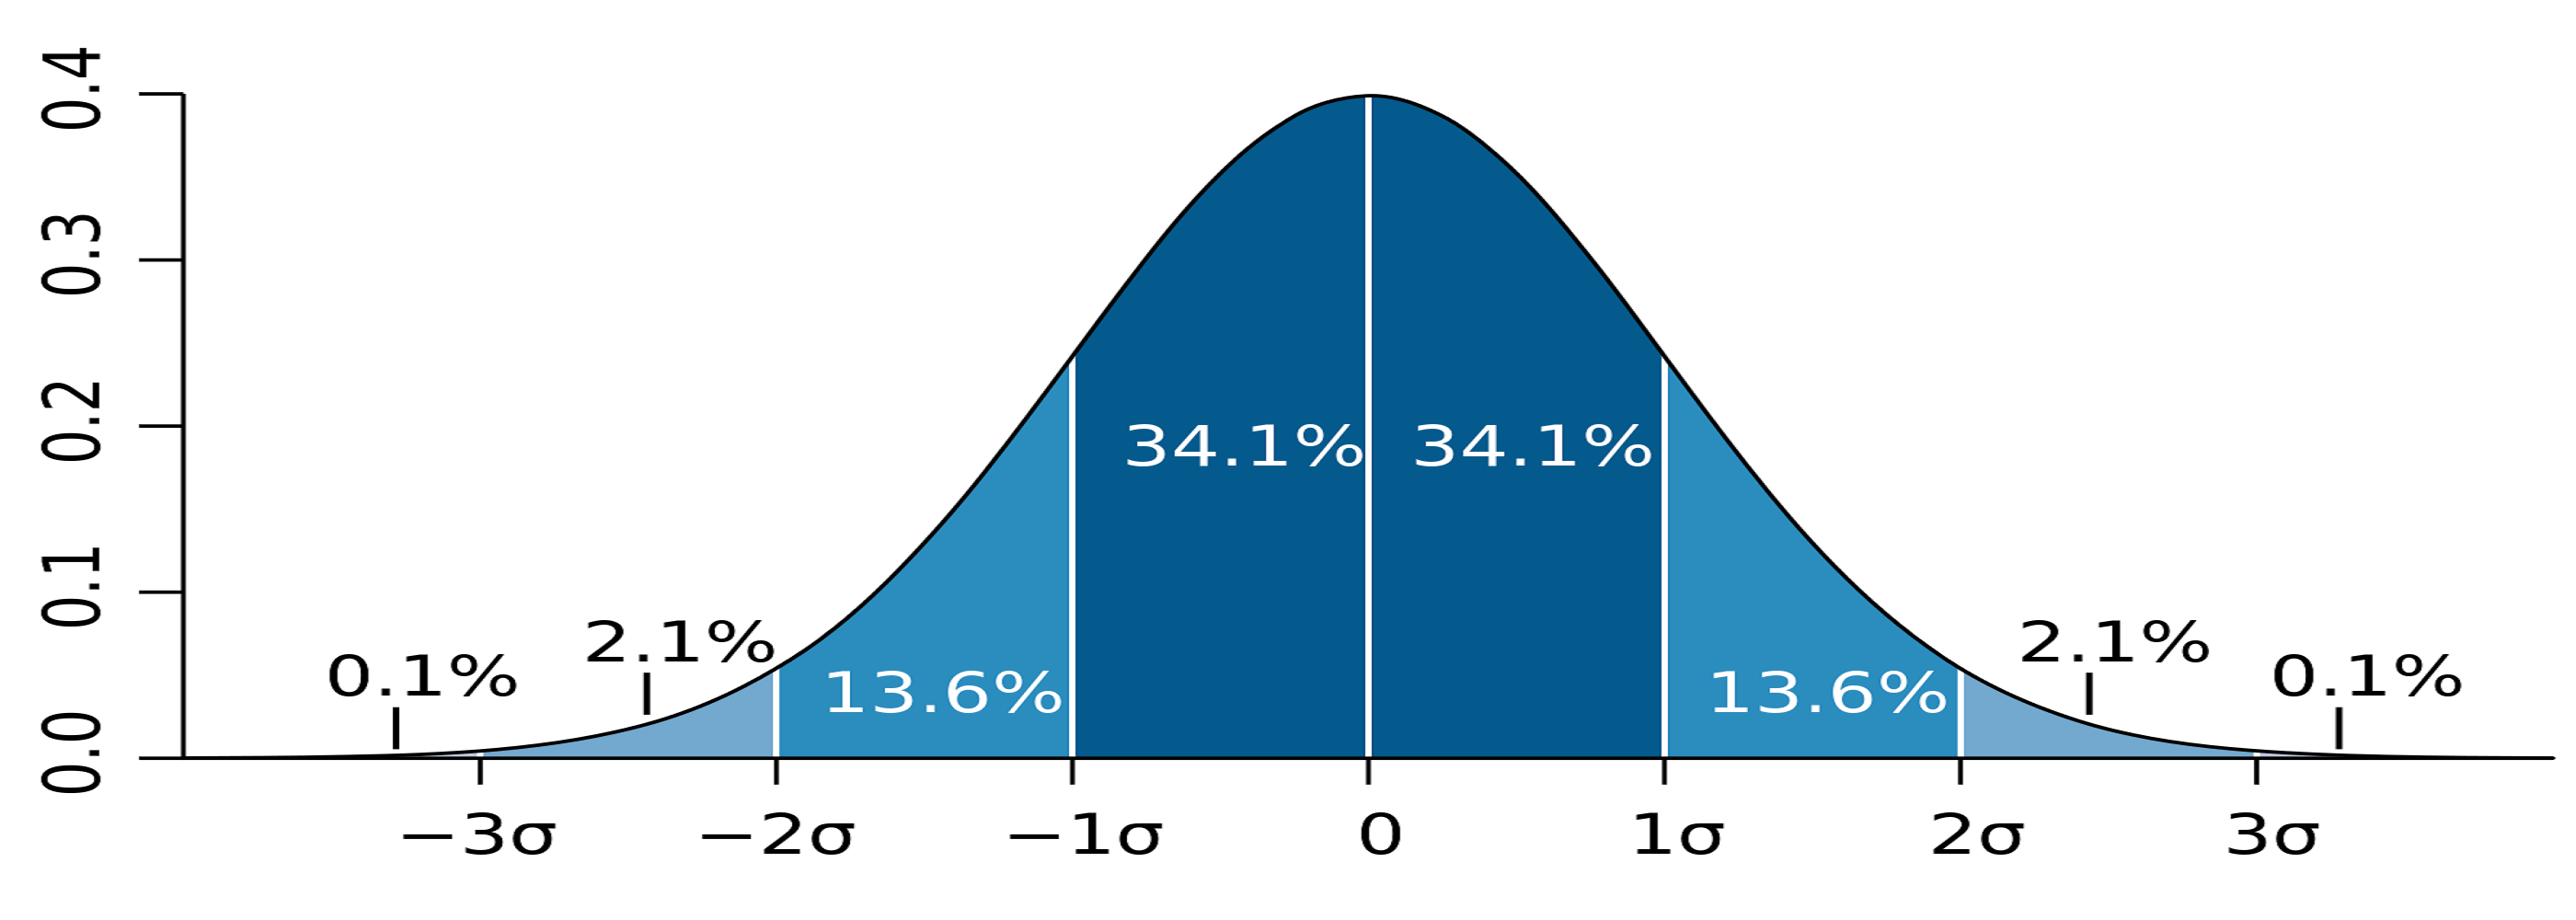 Правило 3 сигм для нормального распределения случайной величины. Нормальное распределение случайной величины 2 Сигма. Критерий трех сигм. Ghfdbkmj NHT[ CBUV.